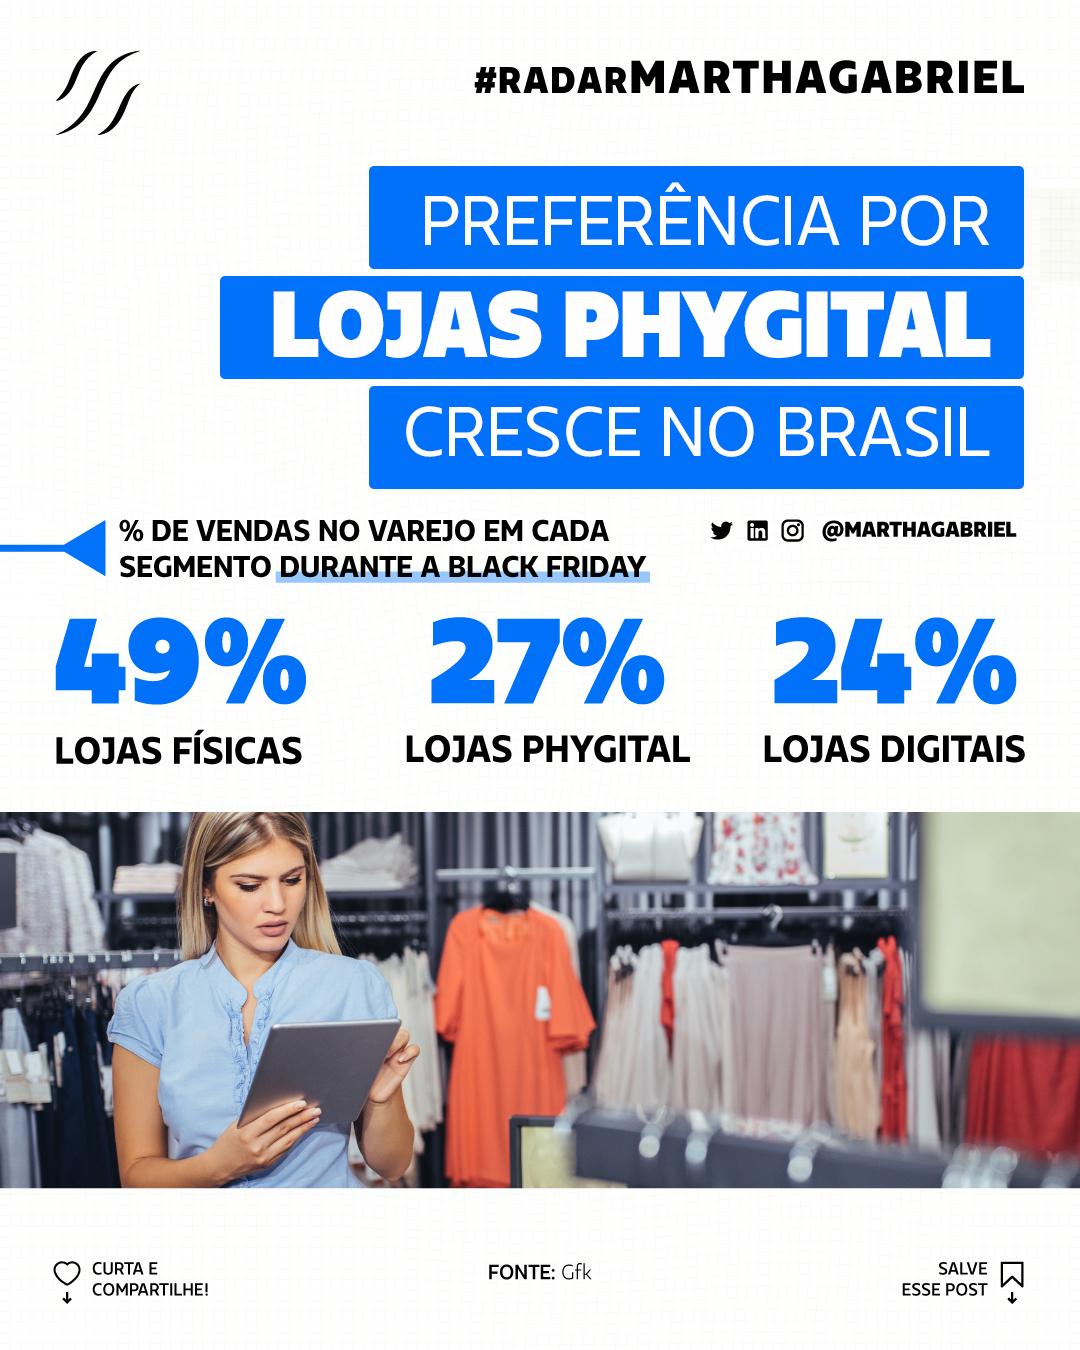 Preferência por lojas phygital cresce no Brasil